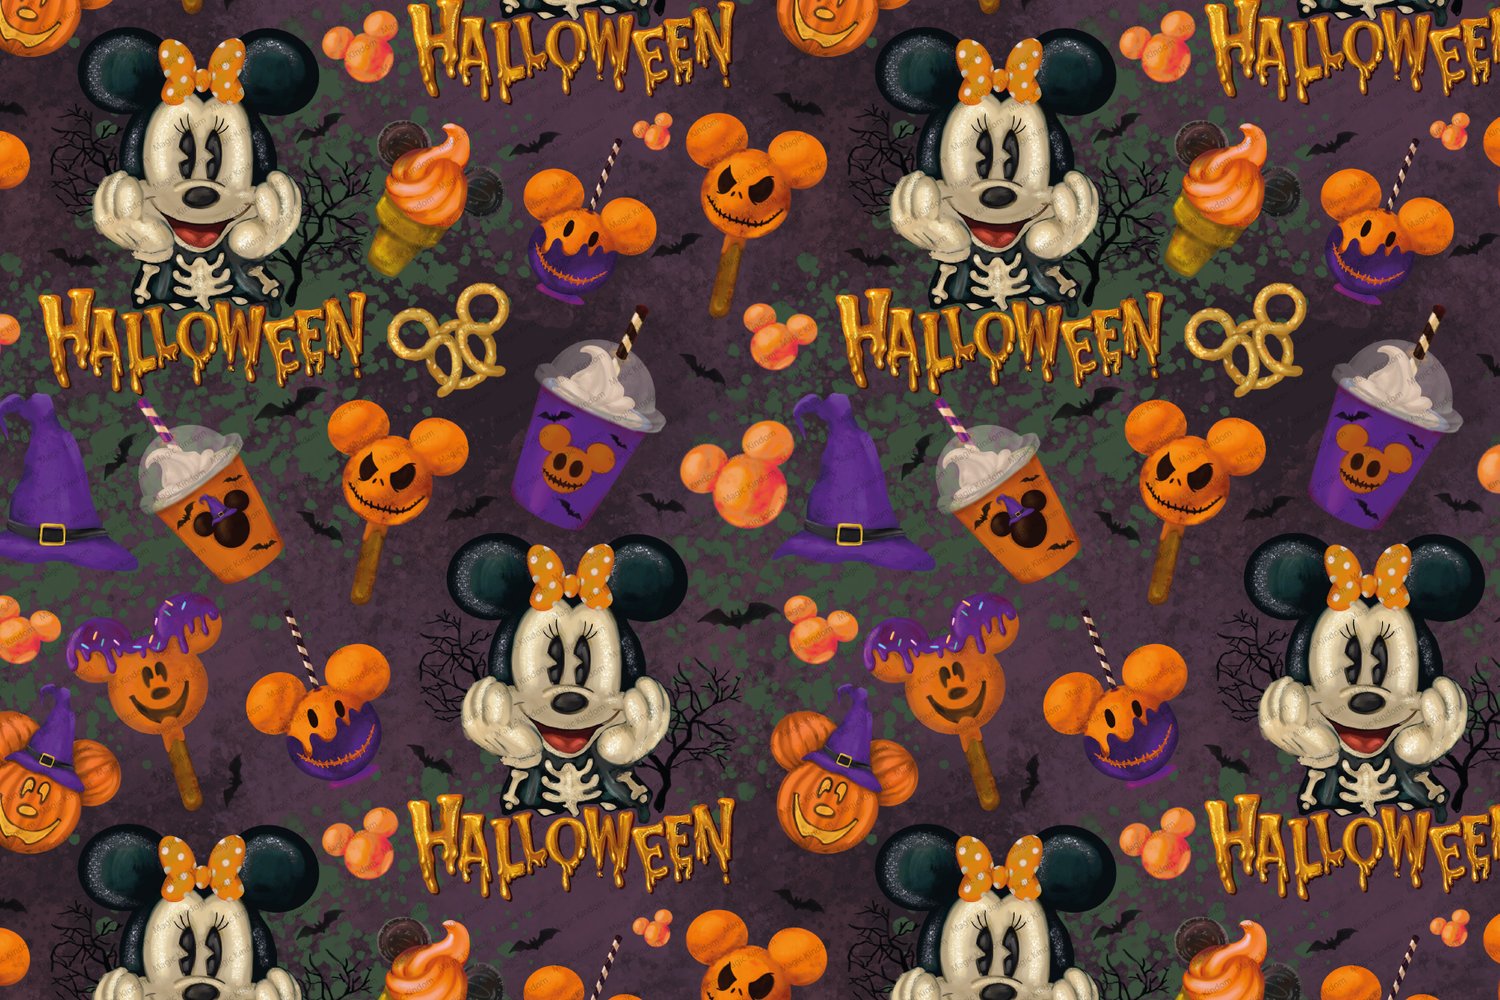 A Magical Disney Halloween - Sticker Sheet Disney, Halloween